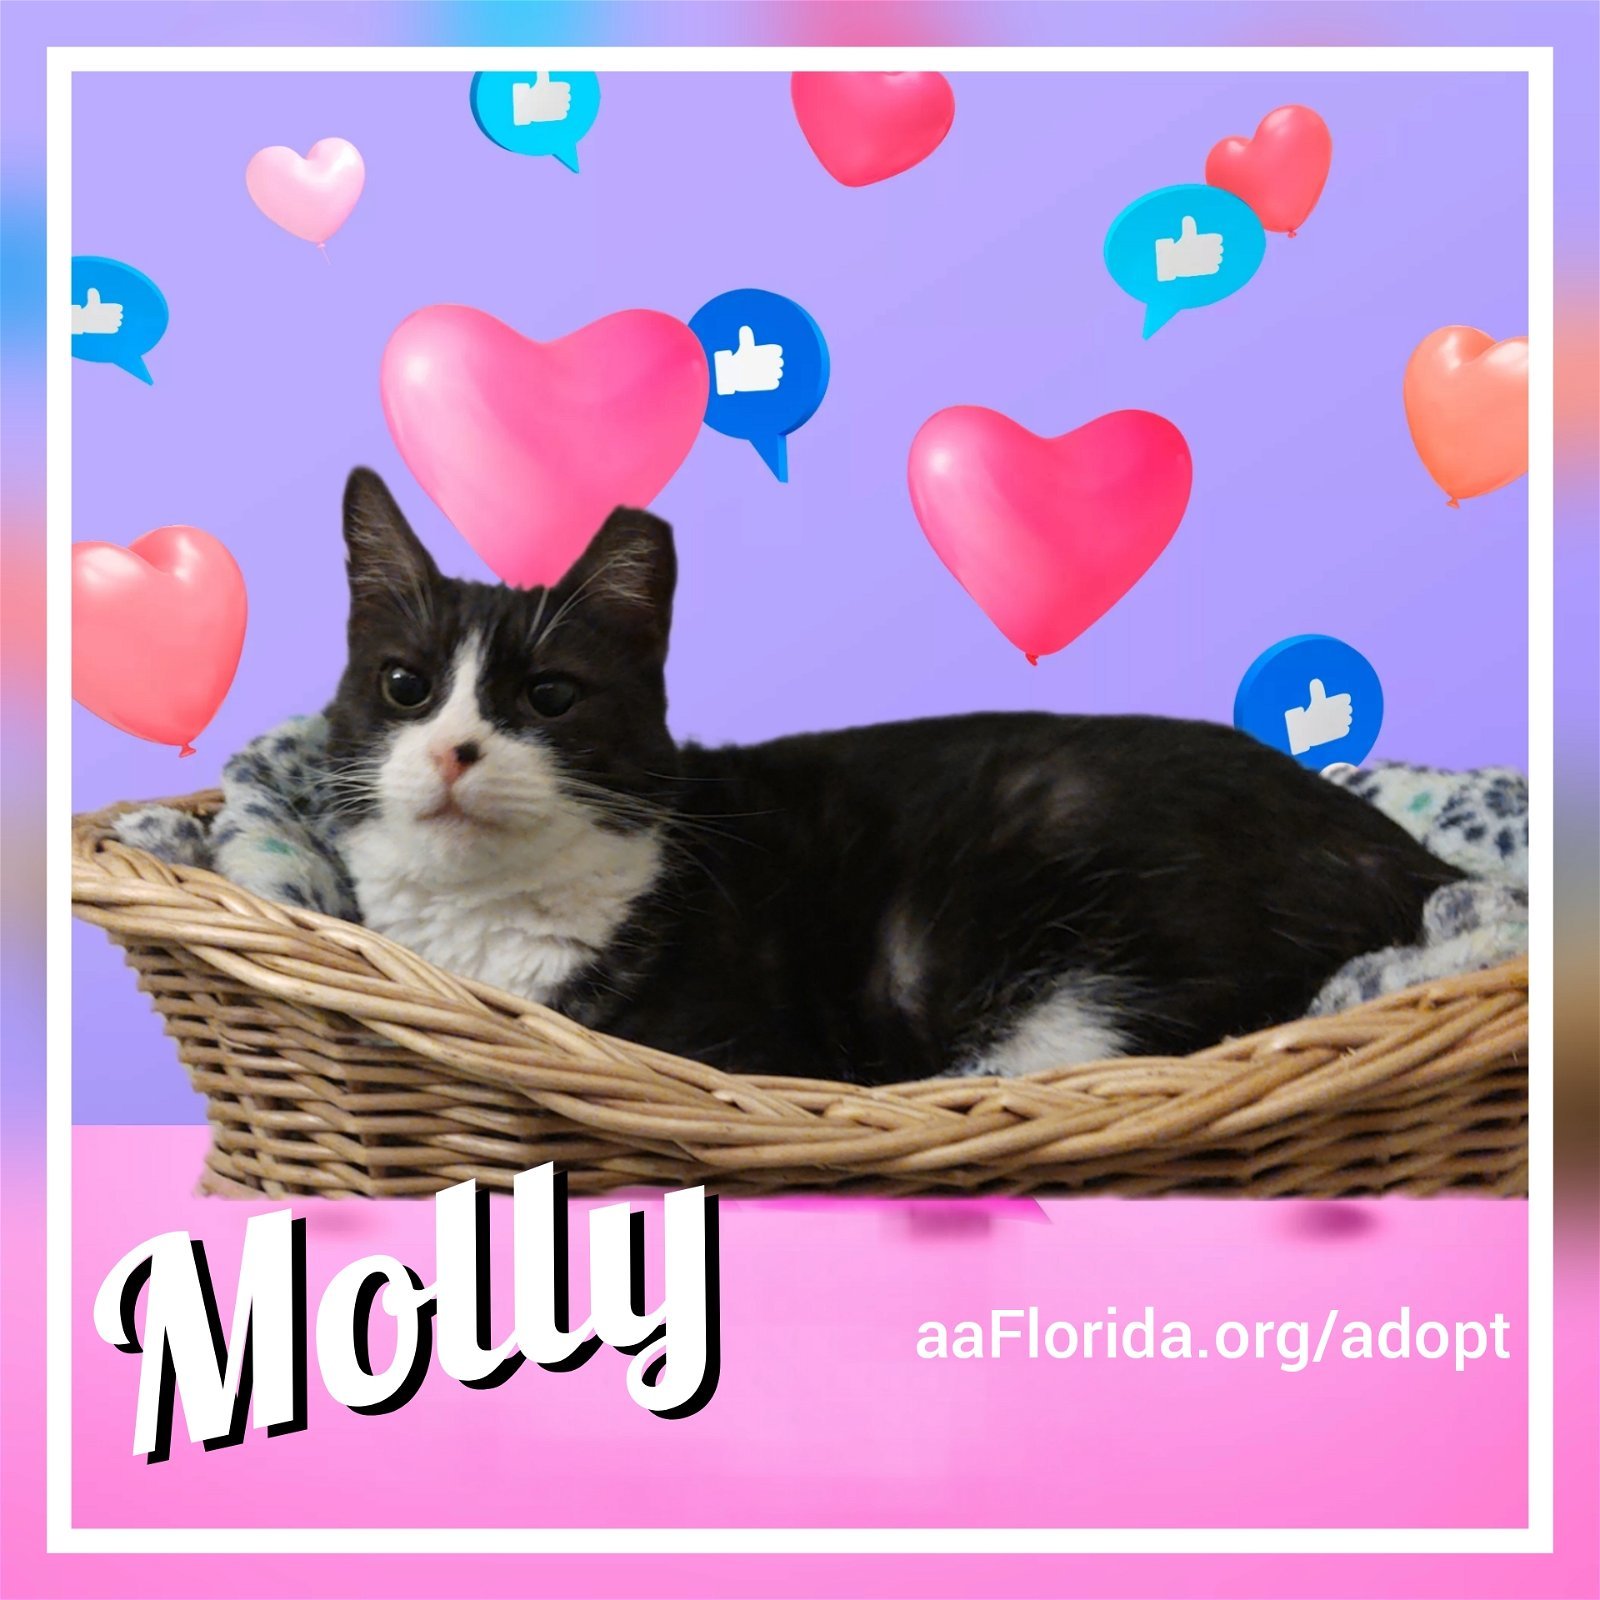 Molly